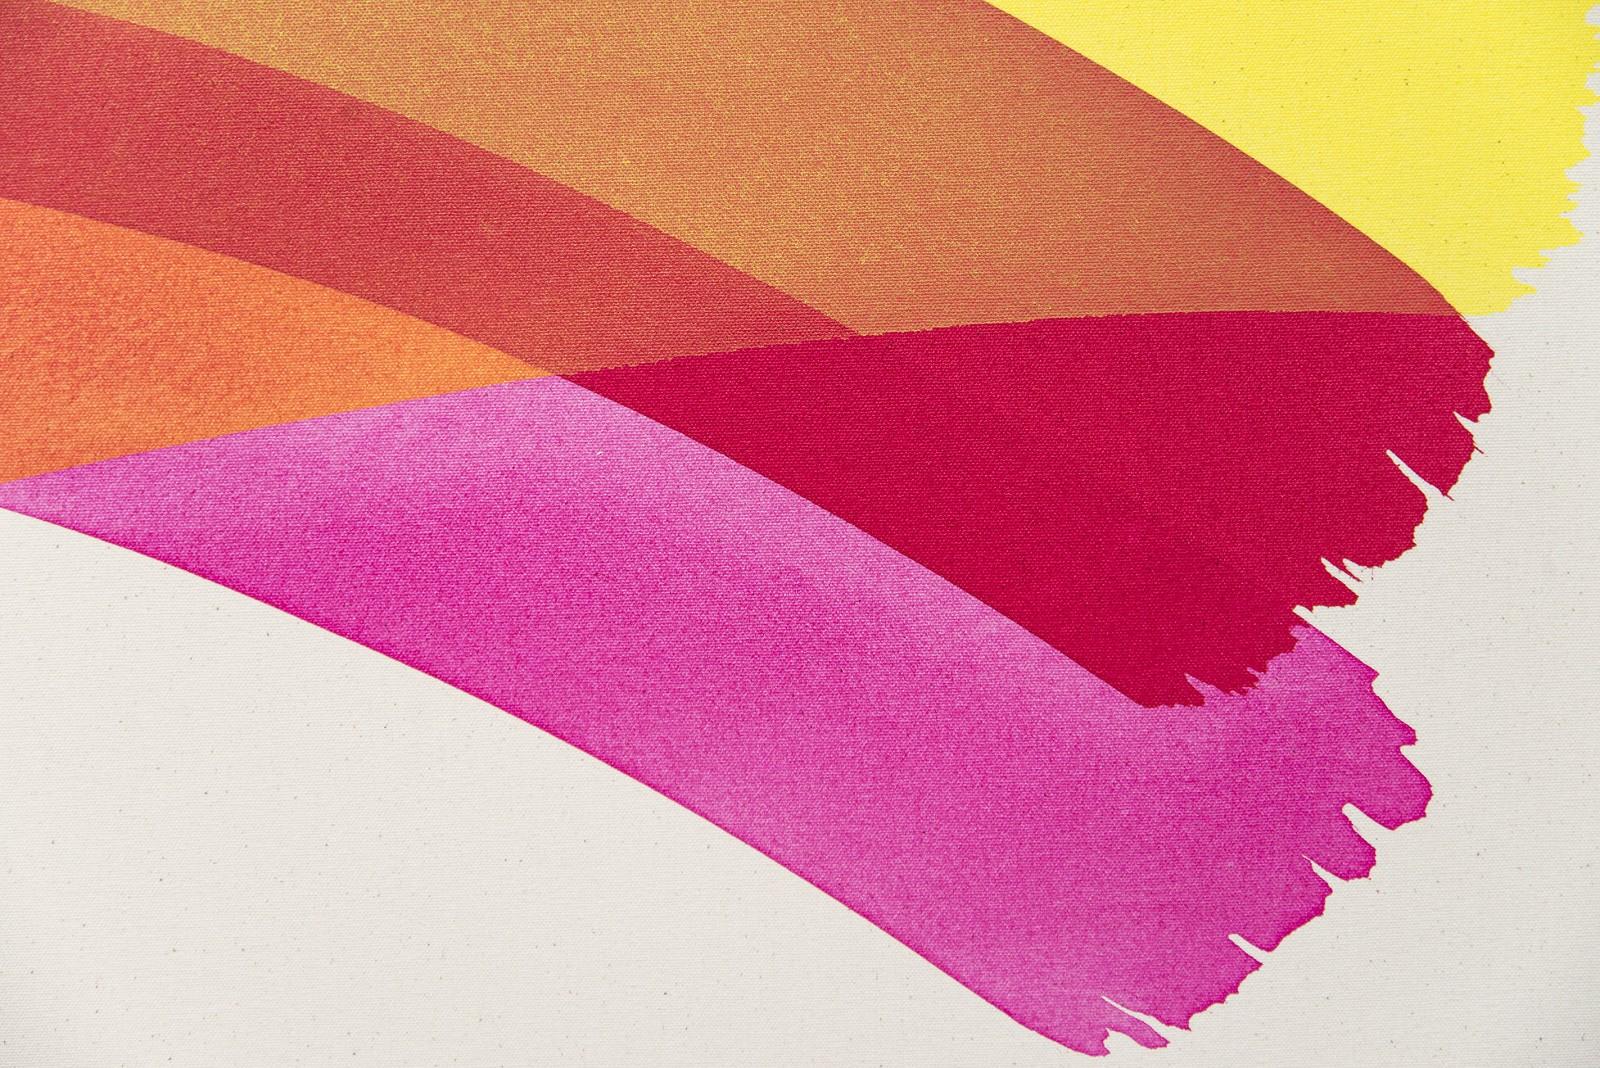 Des arcs-en-ciel rouges, jaunes et roses éclaboussent la toile dans cette nouvelle peinture abstraite de l'artiste de Calgary Aron Hill. Une marque noire et une ligne rouge ajoutent un intérêt graphique à cet acrylique moderne et minimaliste. D'un